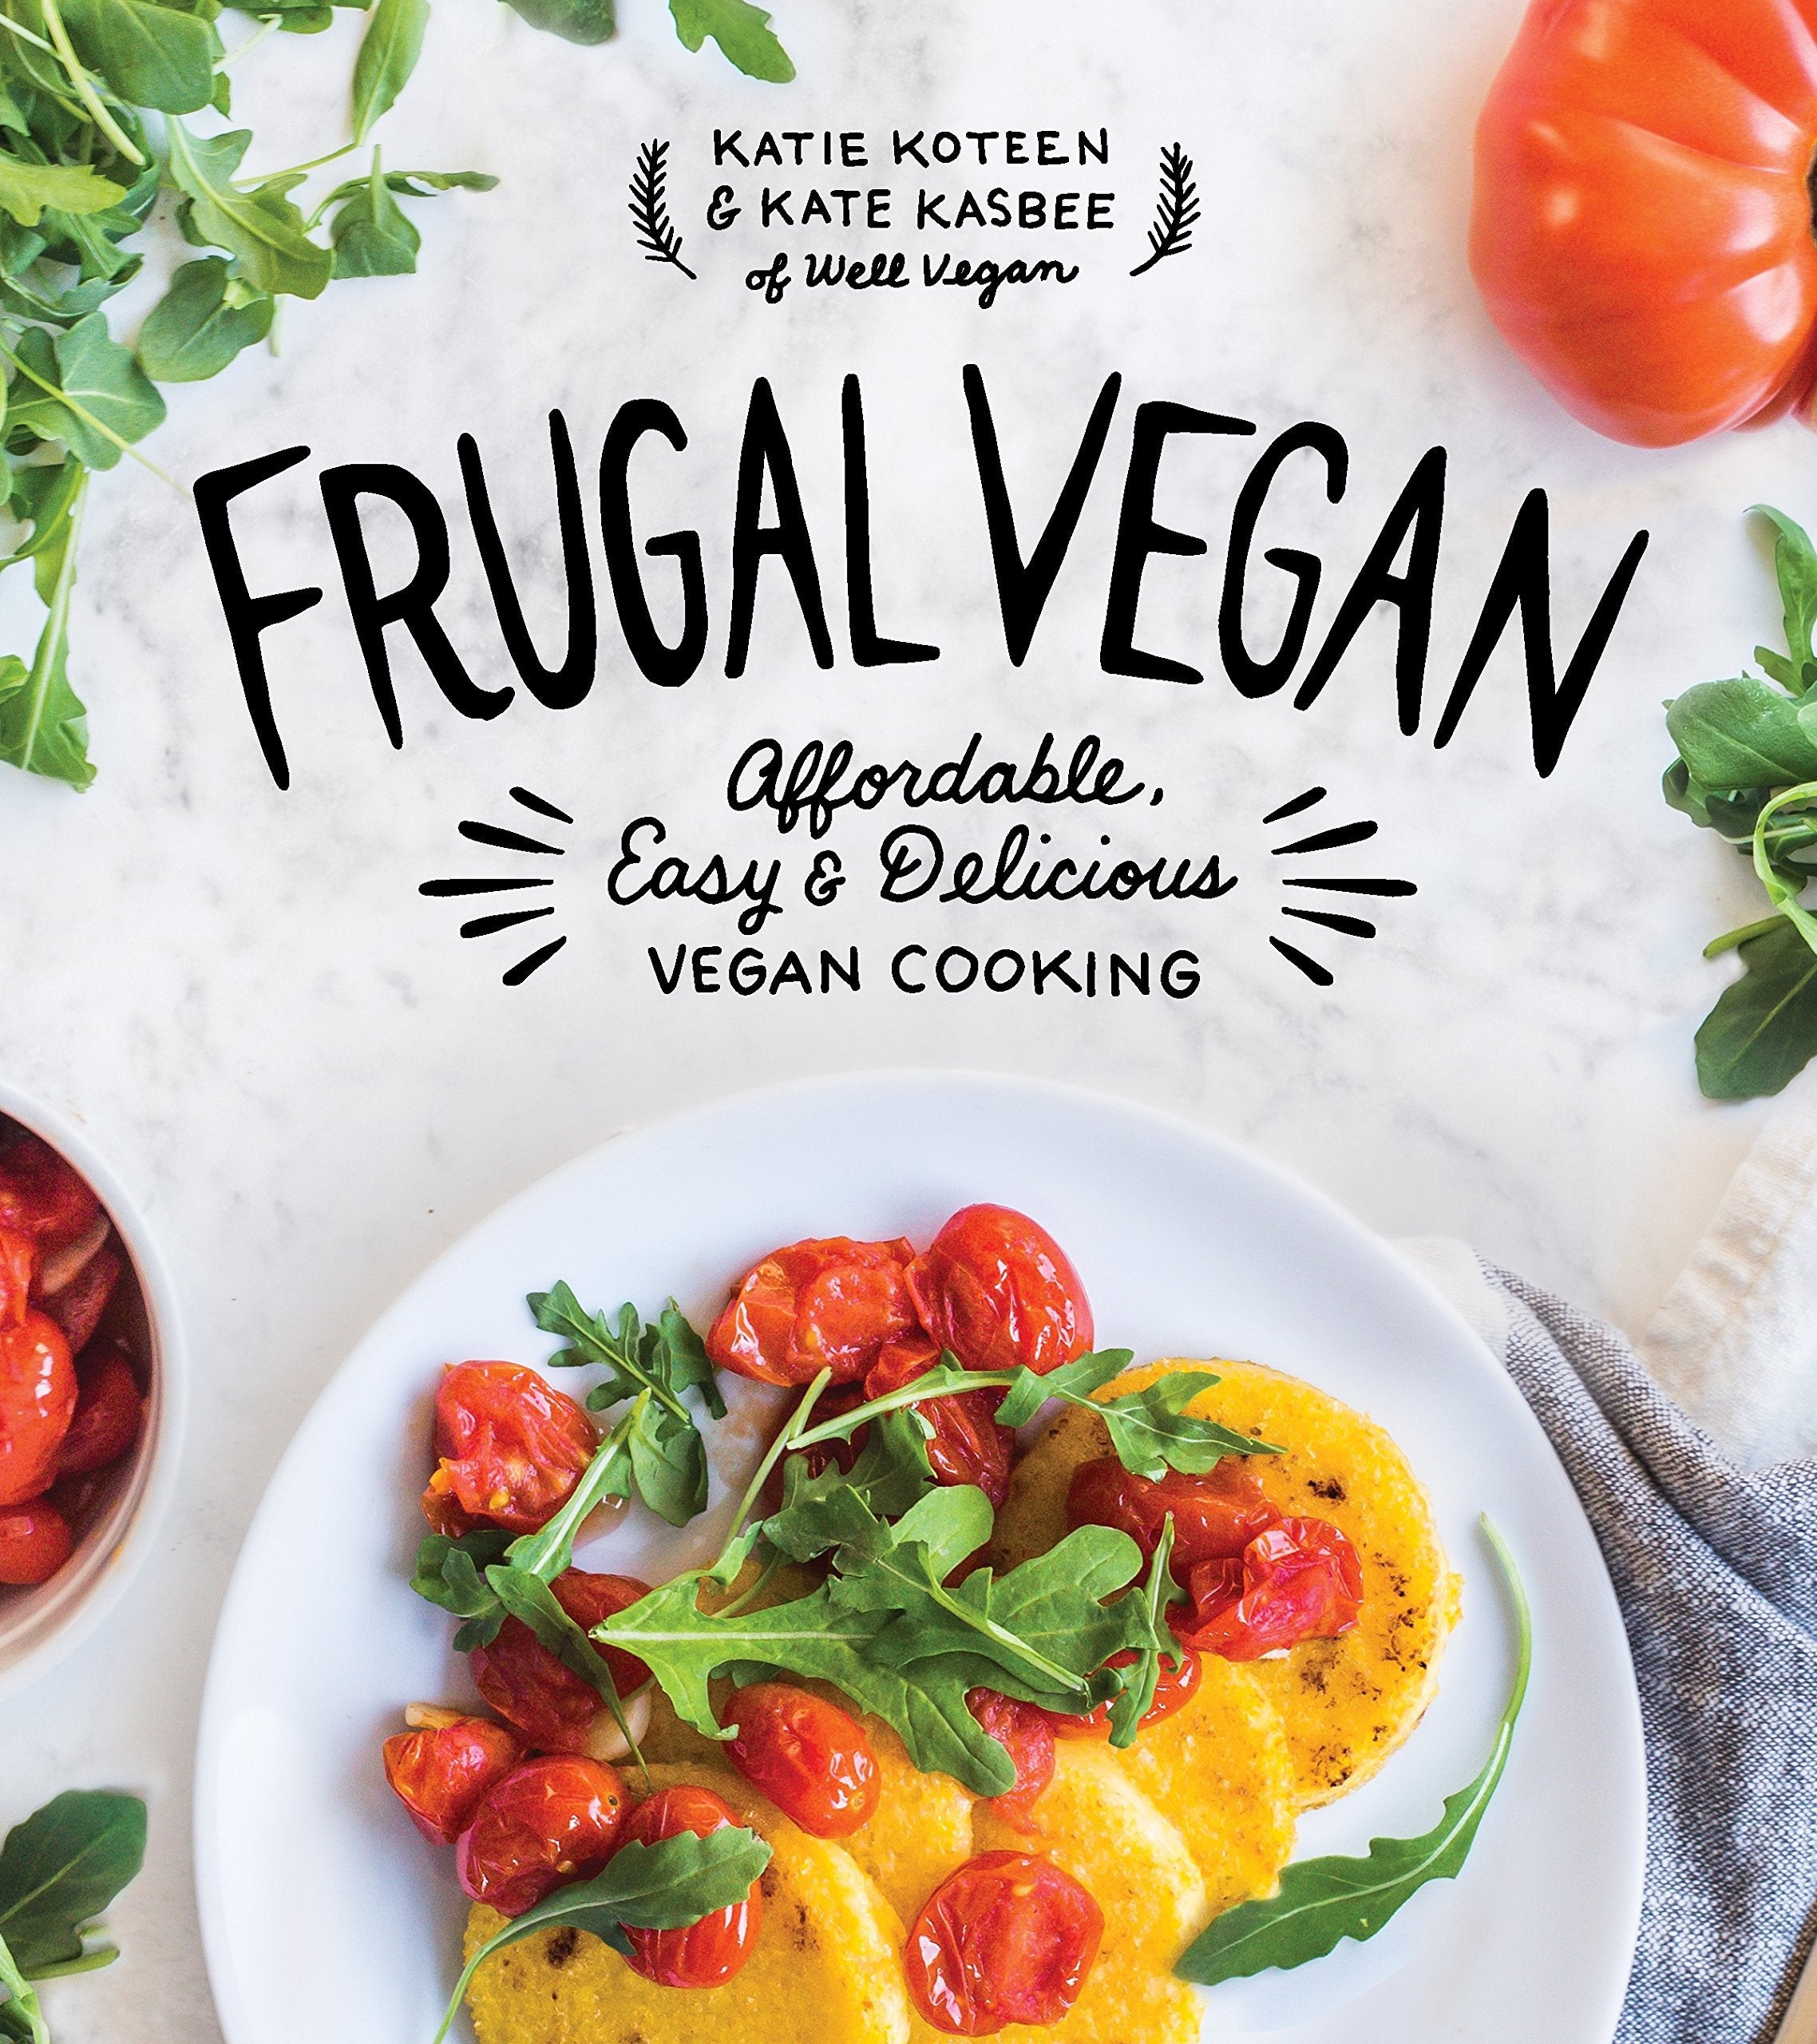 Frugal Vegan Recipes New Katie Koteen &amp; Kate Kasbee Frugal Vegan Affordable